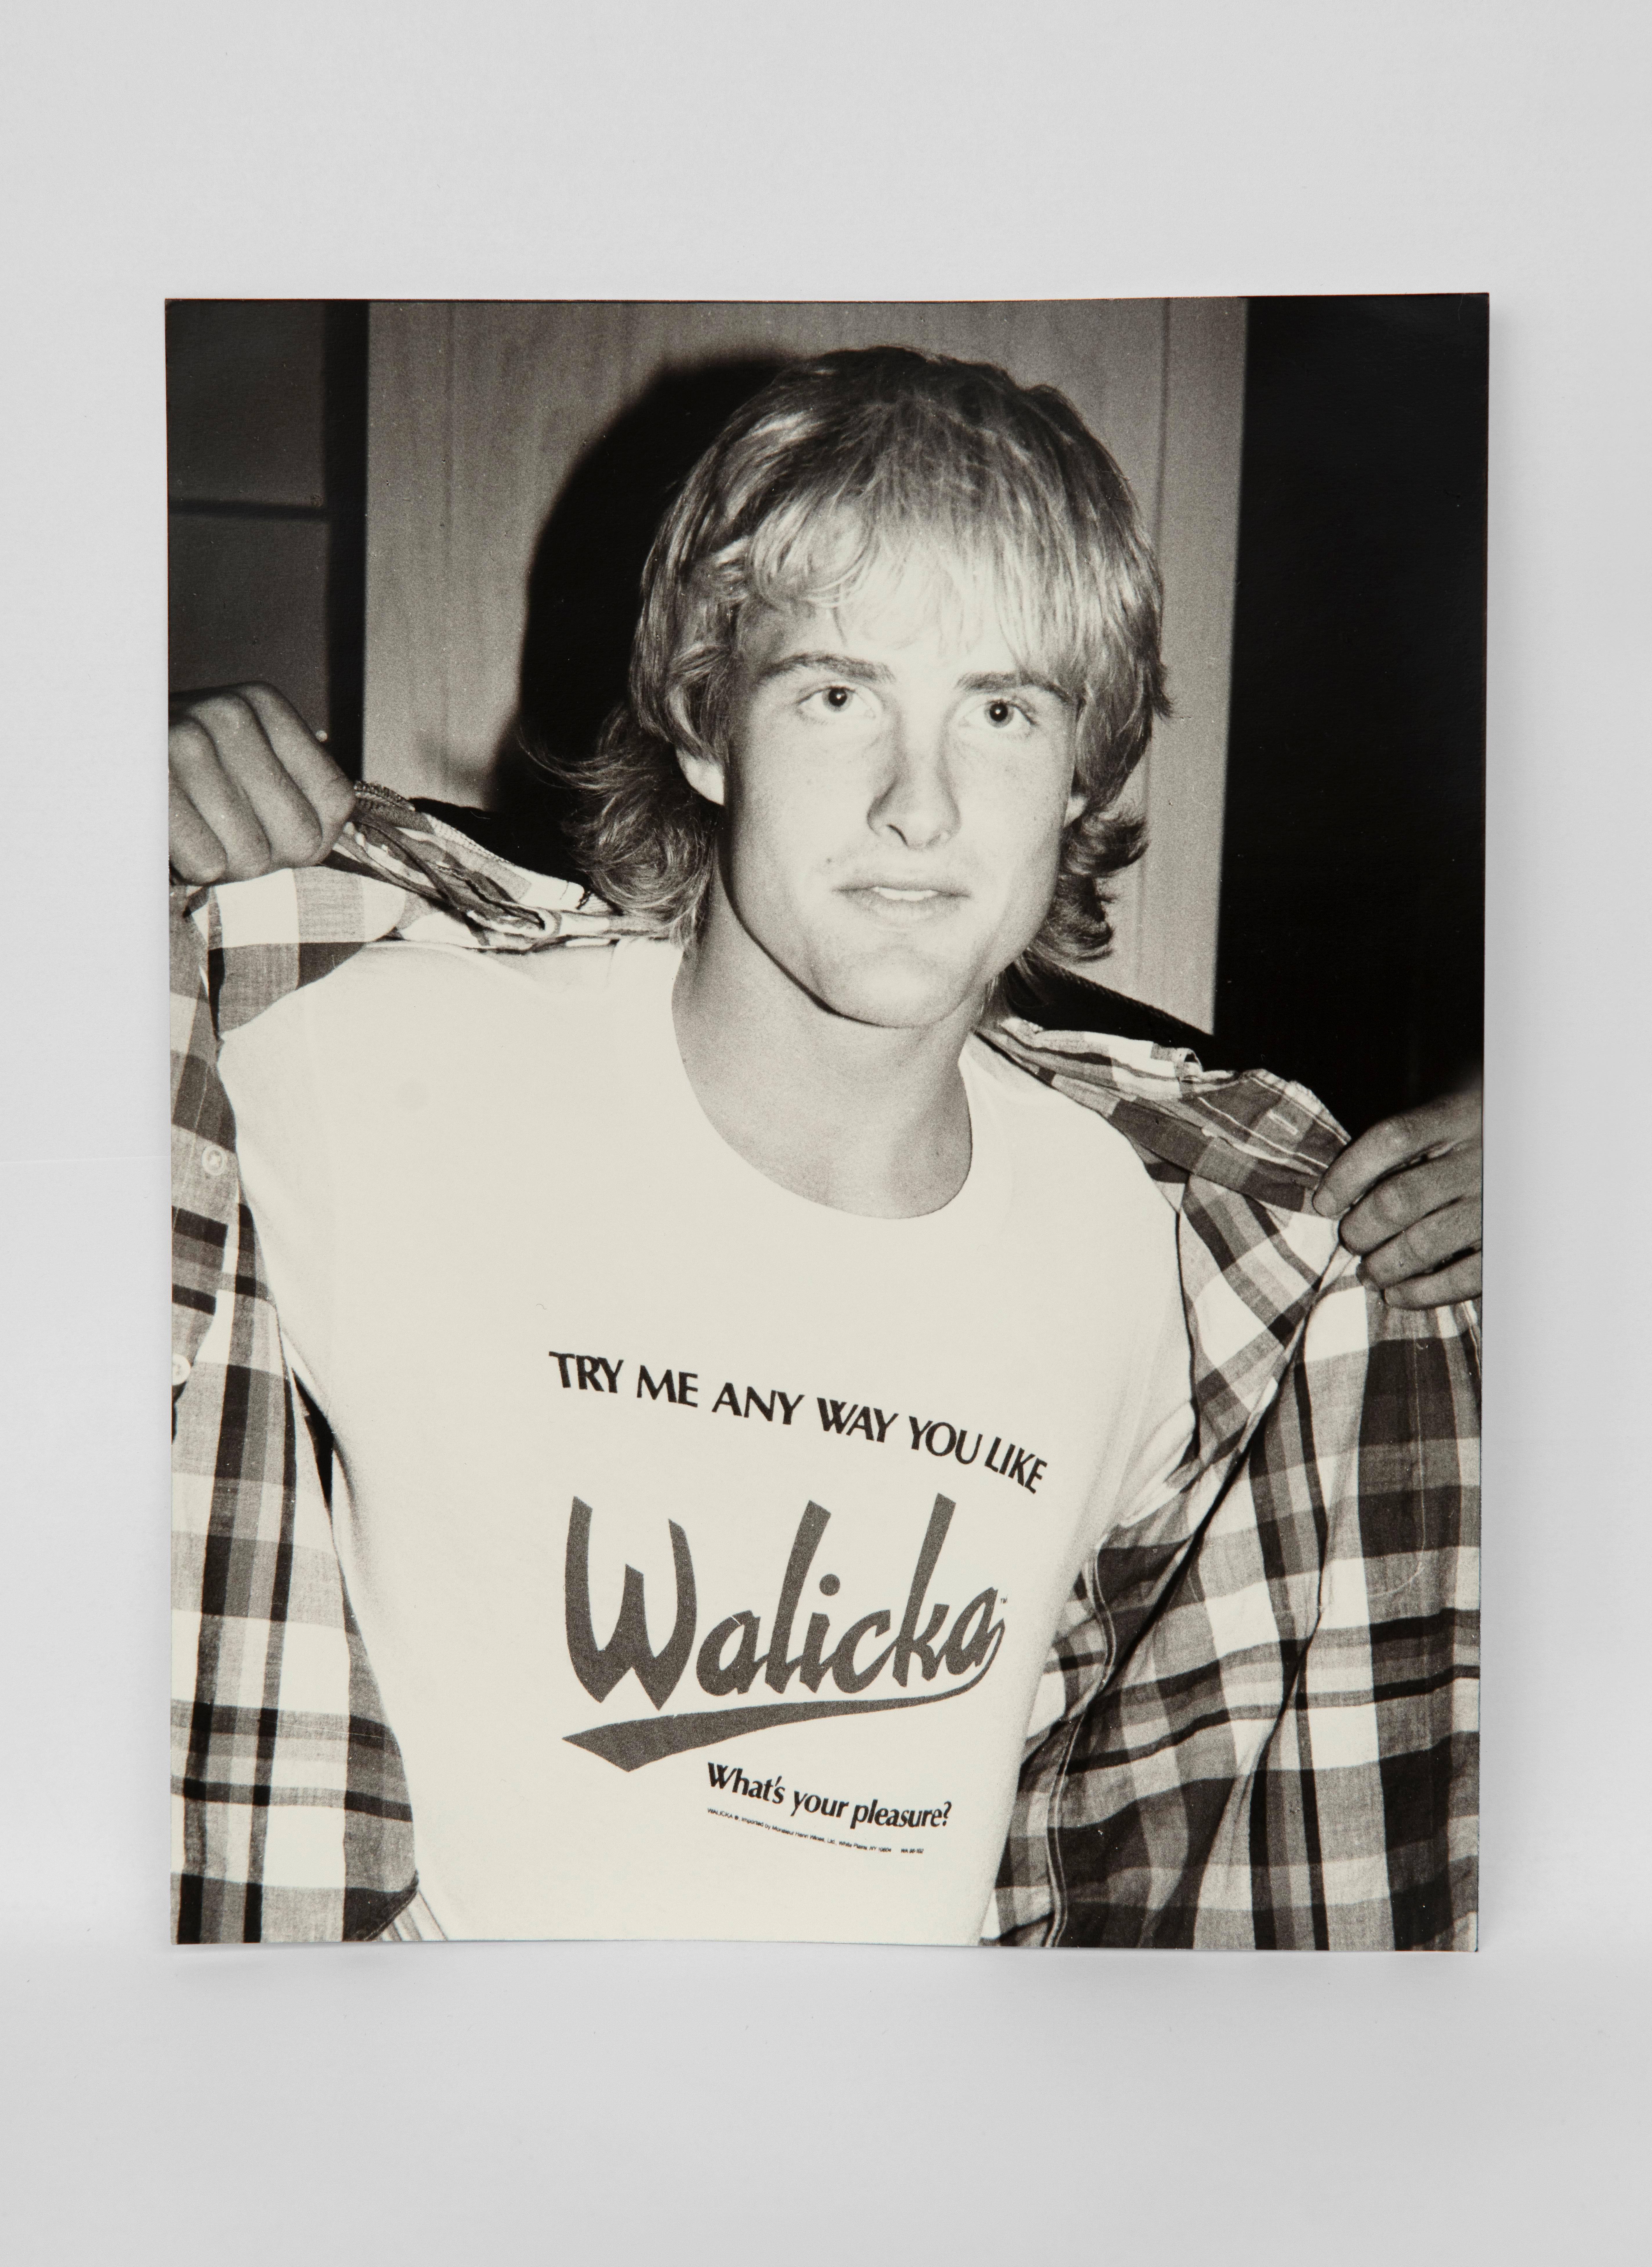 Andy Warhol Portrait Photograph - Ken Leslie